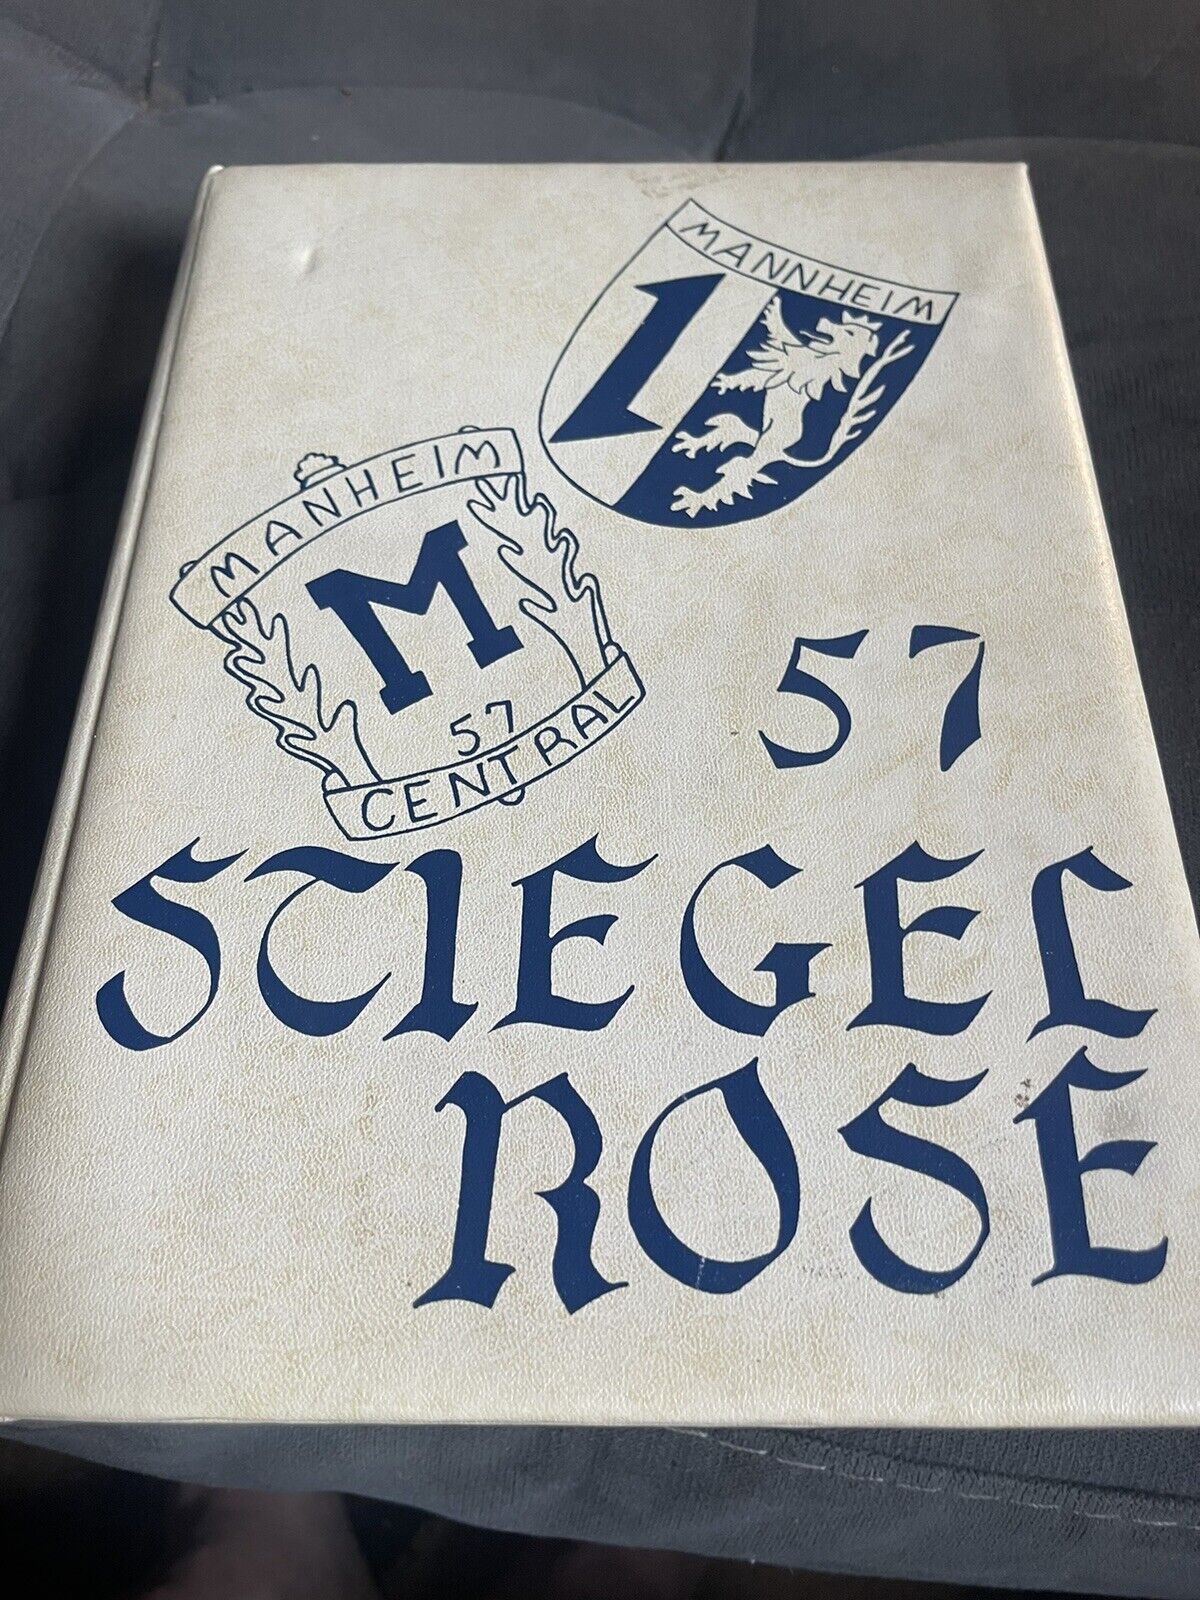 3 Manheim Central High School Yearbooks 1955, 1856, 1958. Signatures. Stiegel